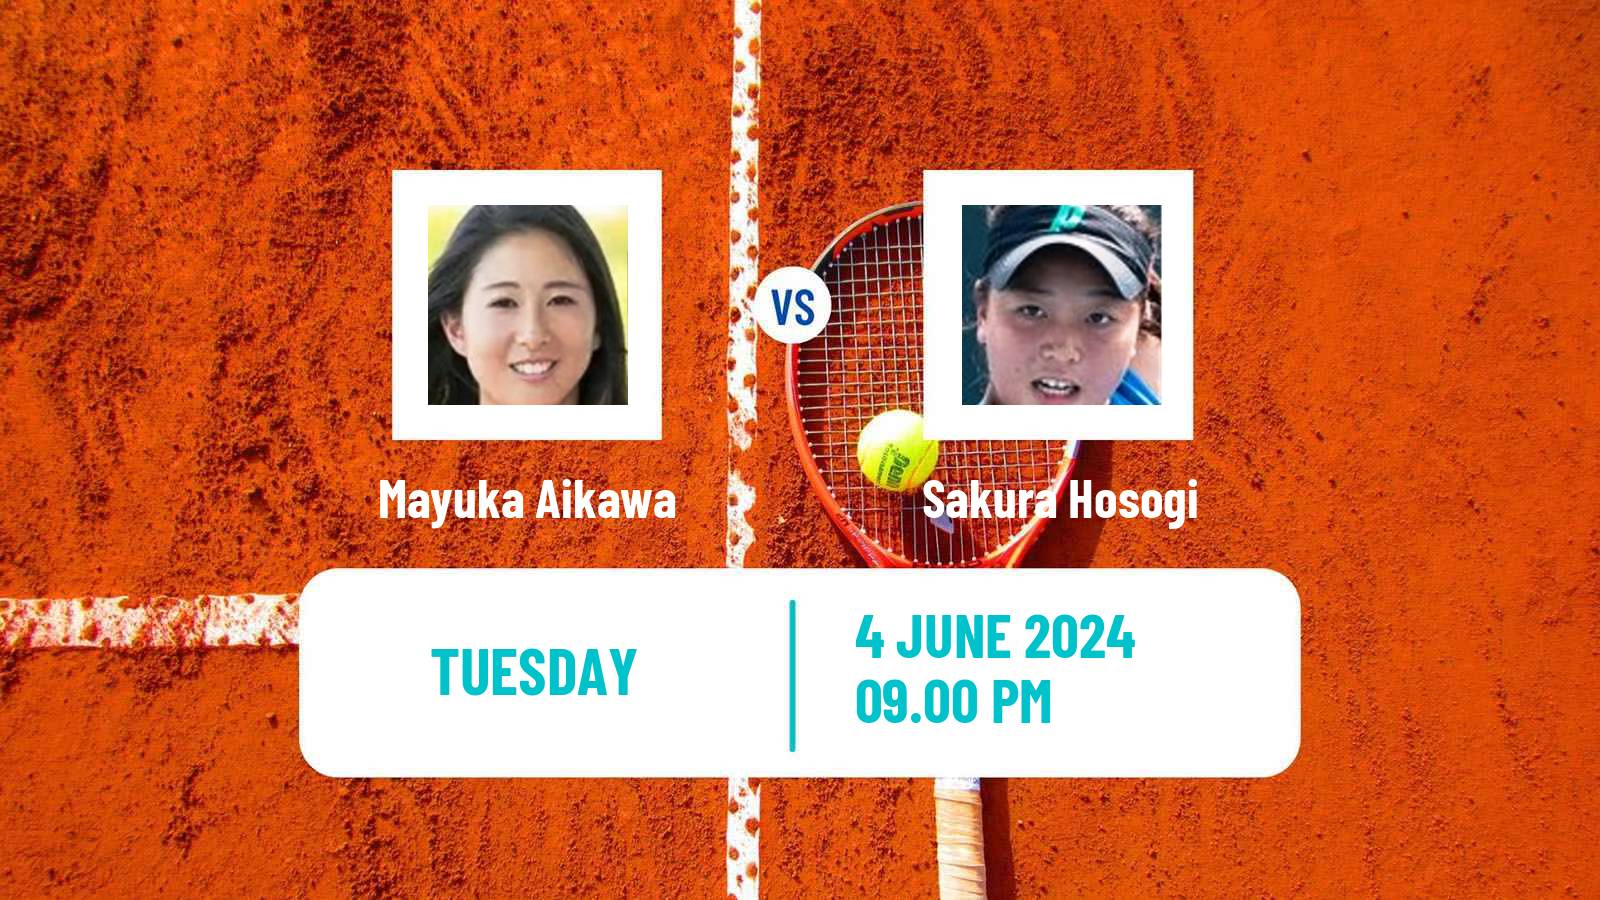 Tennis ITF W35 Daegu Women Mayuka Aikawa - Sakura Hosogi